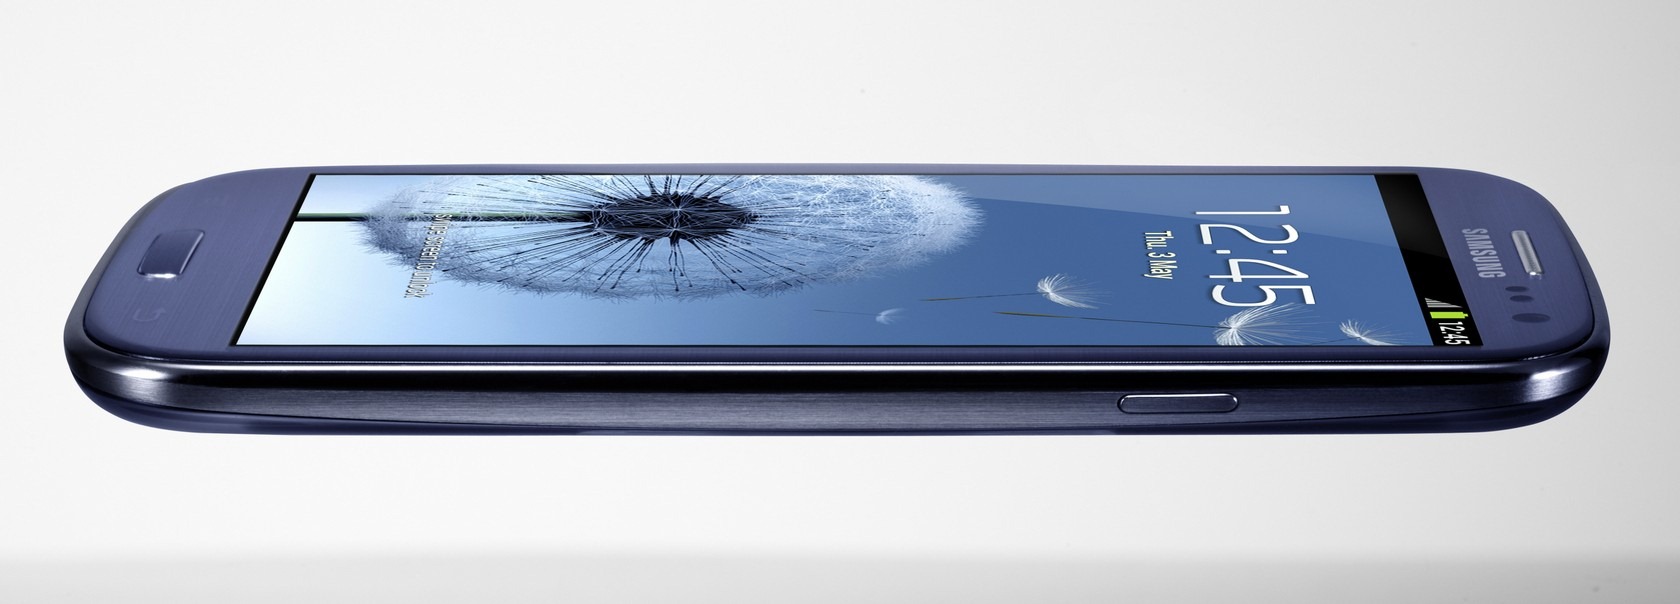 سامسونج تكشف أخيرا عن الهاتف Galaxy S III [المواصفات الكامله + صور + فيديو]